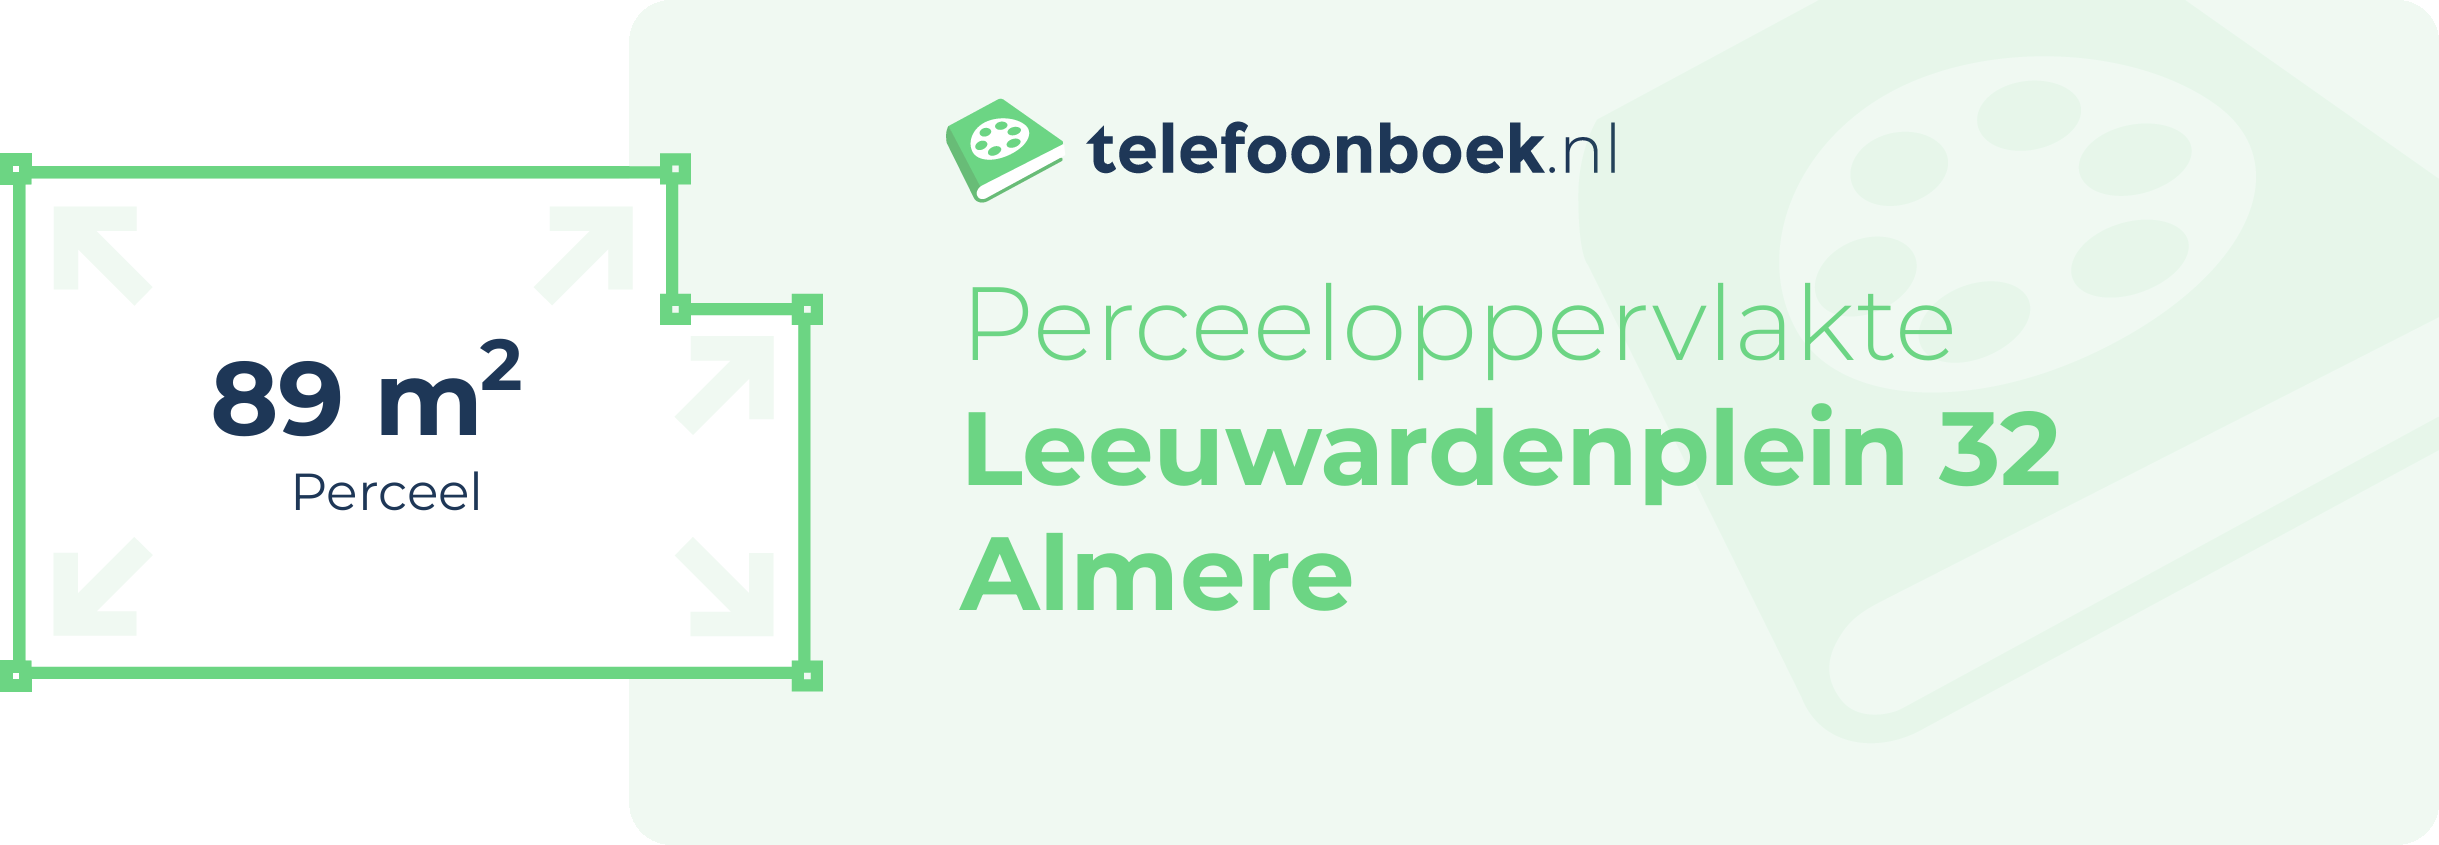 Perceeloppervlakte Leeuwardenplein 32 Almere